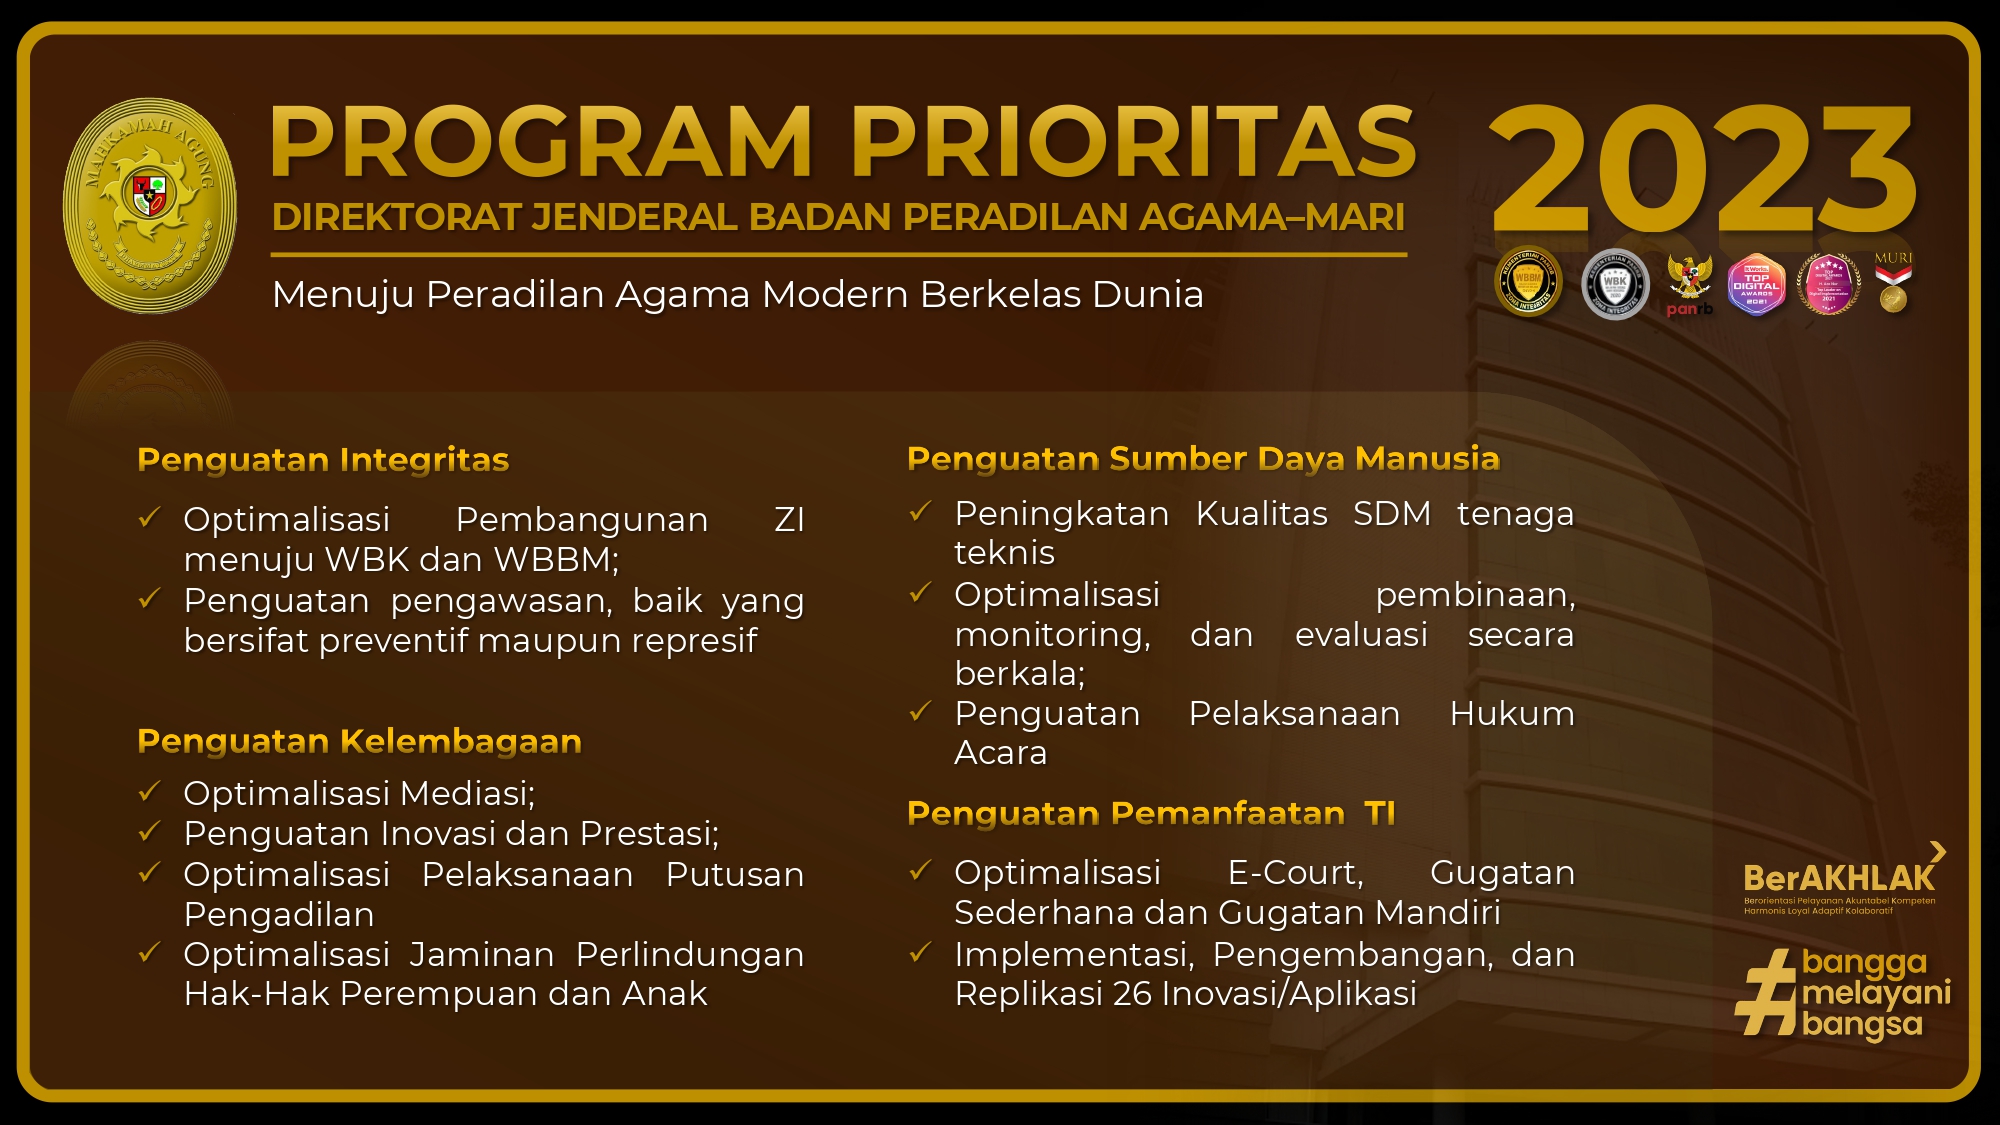 Program Prioritas Ditjen BADILAG MA RI 2023